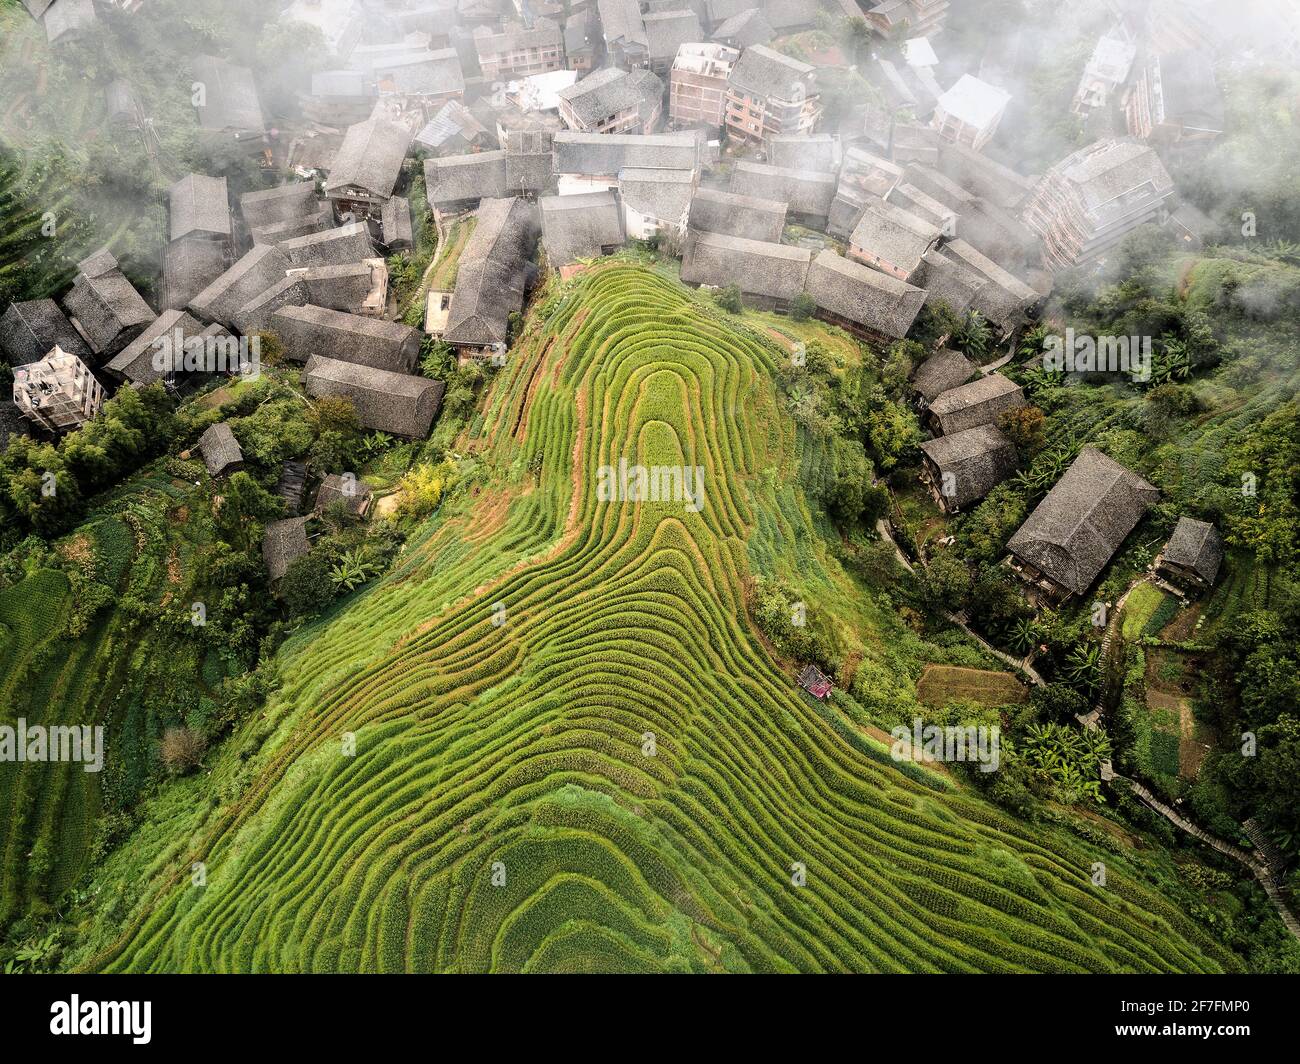 Vista aerea sulle risaie a terrazza di Longsheng, conosciuta anche come spina dorsale del drago a causa della loro forma, Guangxi, Cina, Asia Foto Stock